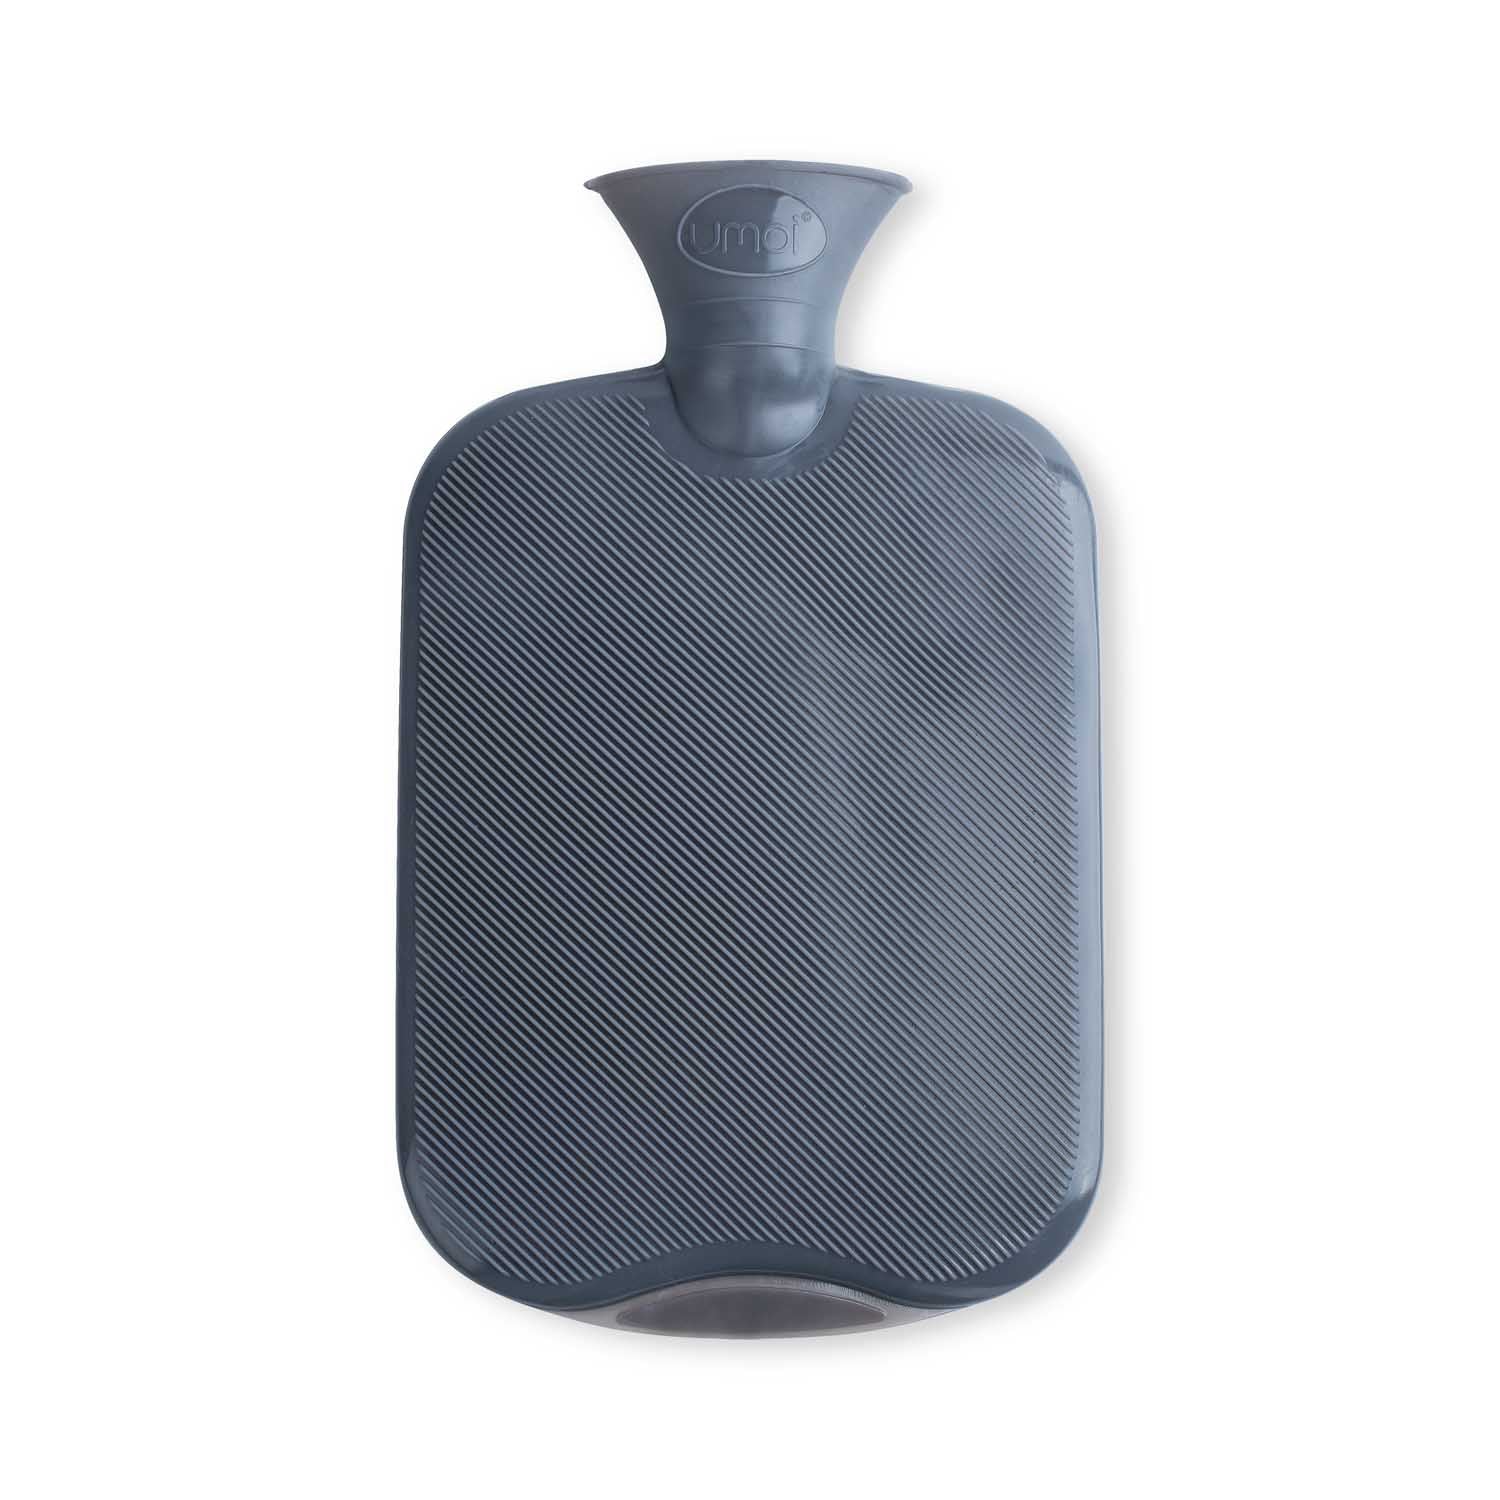 UMOI PVC Wärmflasche 1.8 Liter mit kuschligem Fleece Bezug Grau